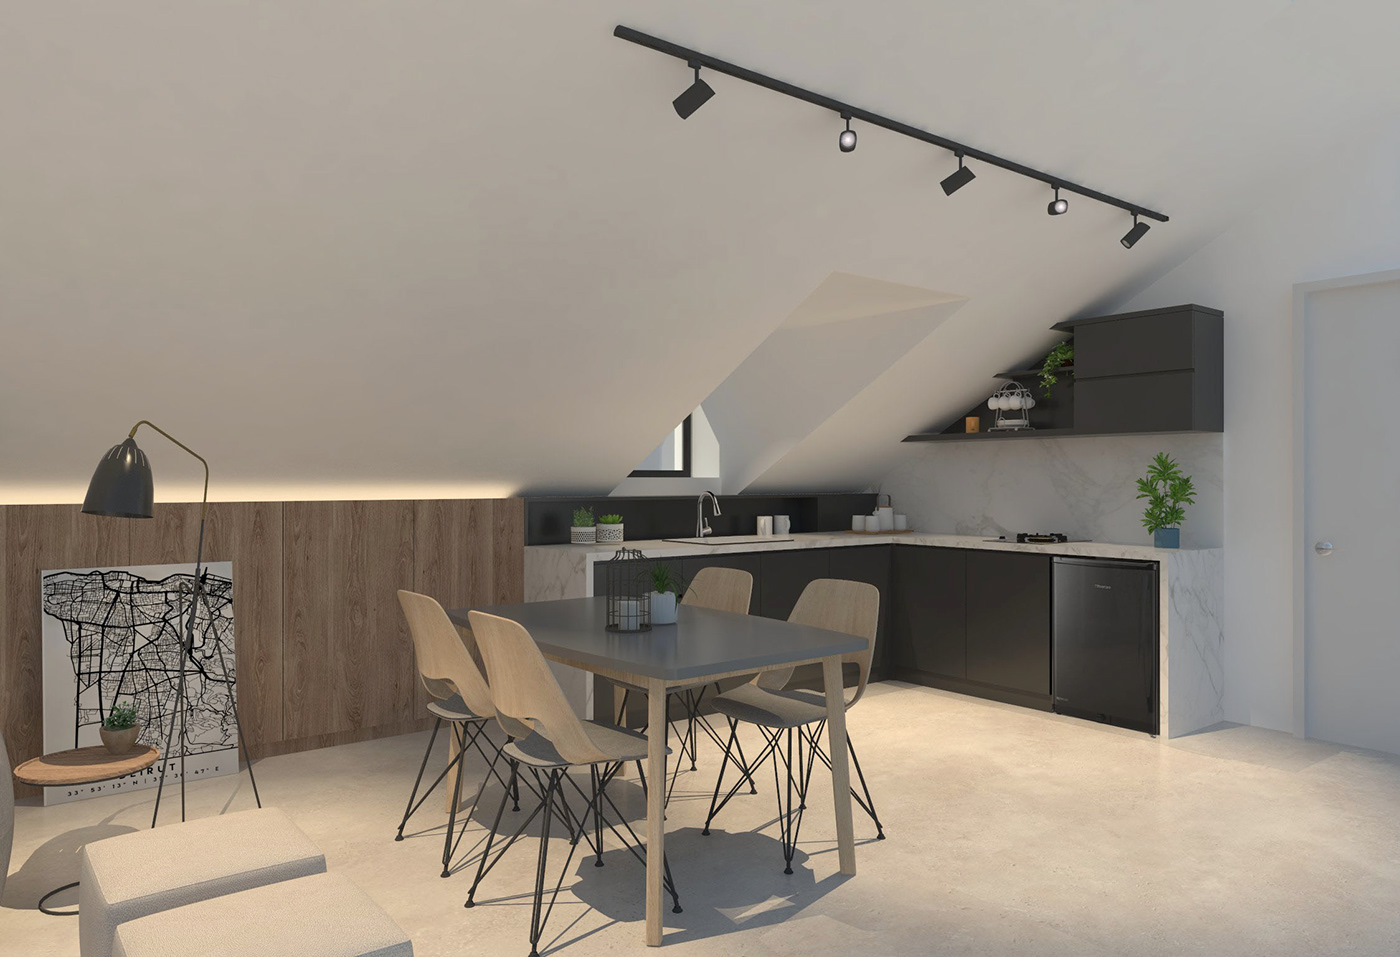 architecture Attic design furniture interiordesign livingroom loftspace minimal